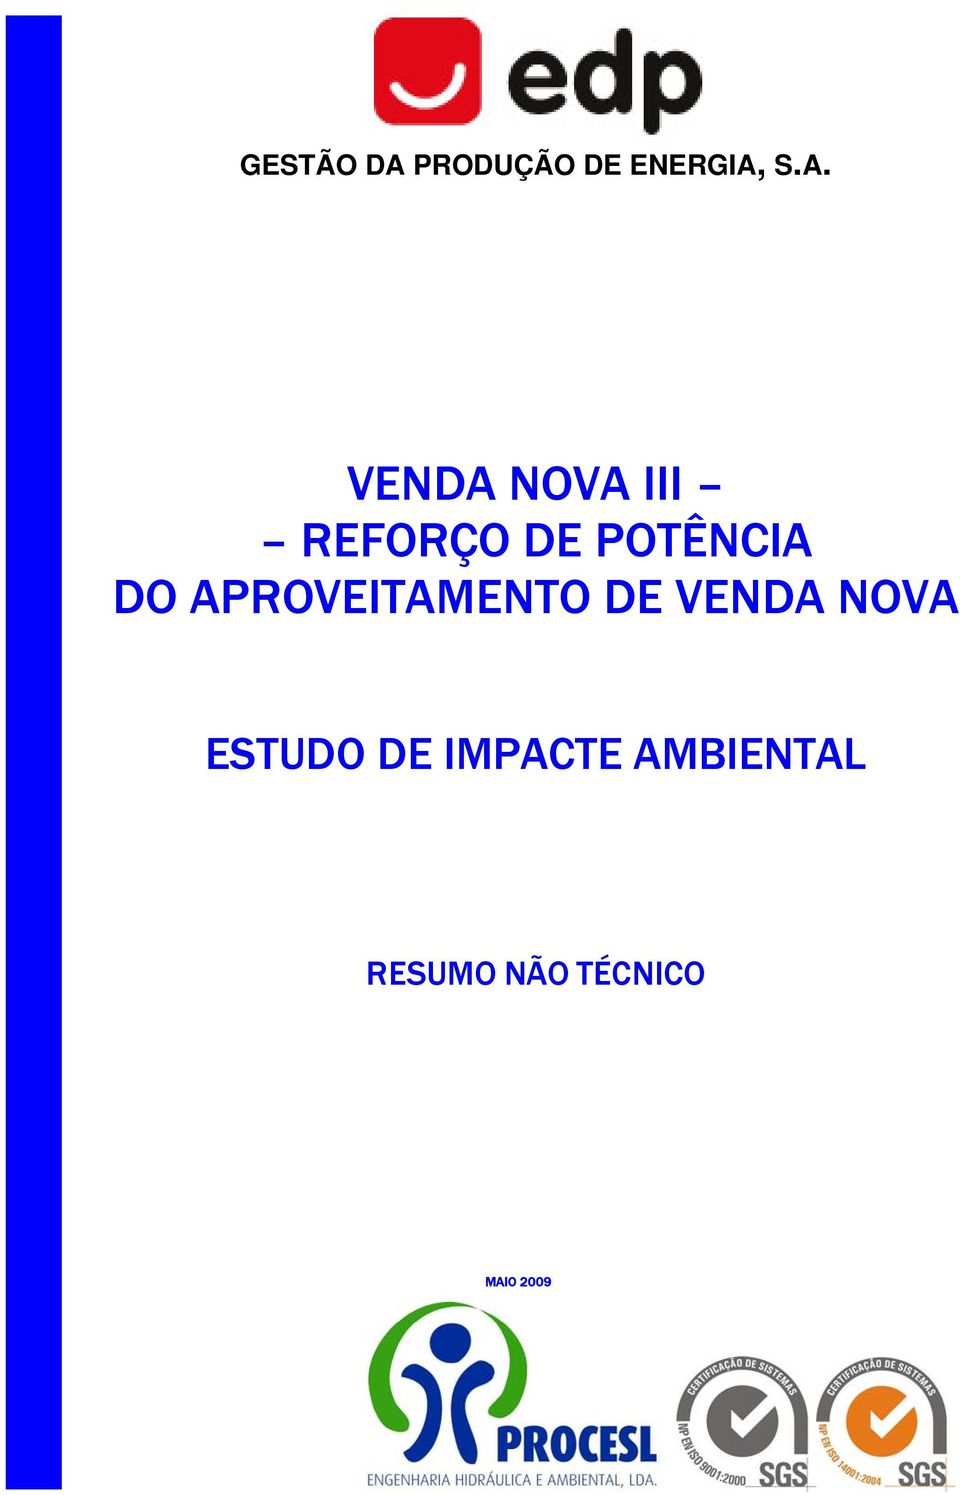 S.A. VENDA NOVA III REFORÇO DE POTÊNCIA